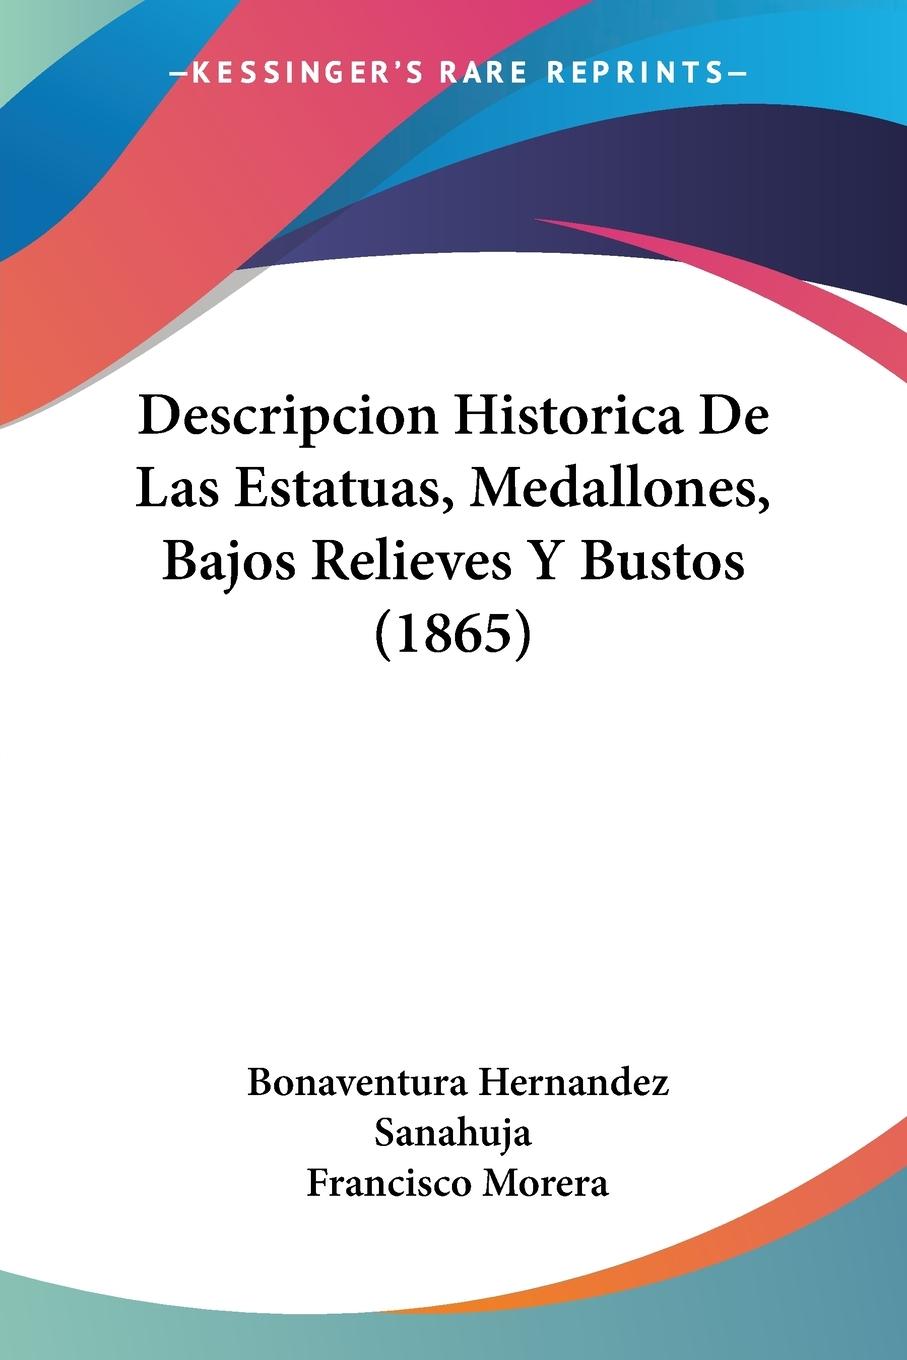 Descripcion Historica De Las Estatuas, Medallones, Bajos Relieves Y Bustos (1865) - Sanahuja, Bonaventura Hernandez Morera, Francisco